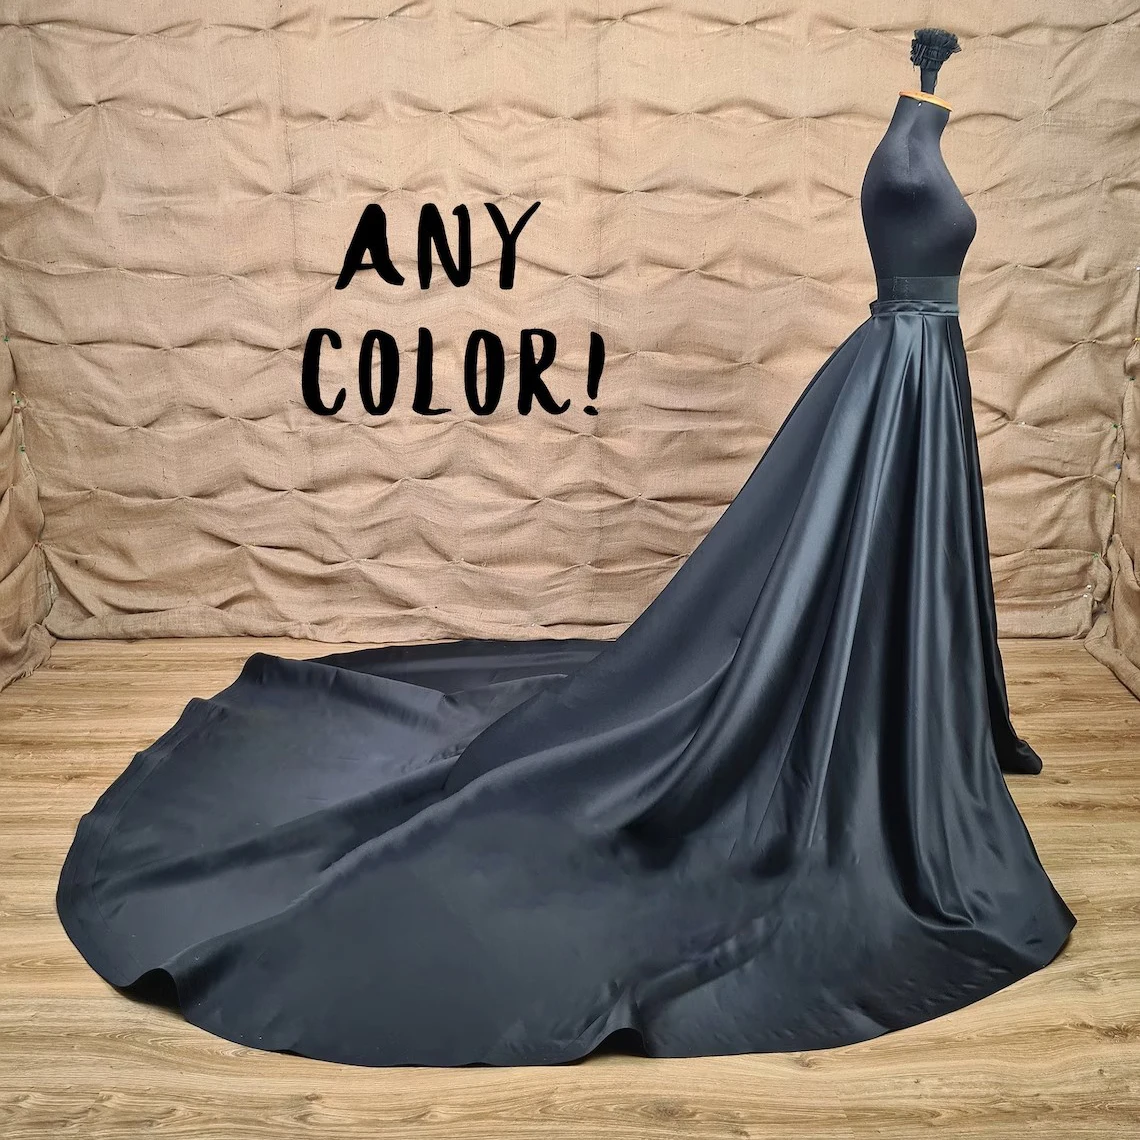 black-satin-wedding-train-detachable-skirt-bridal-overskirt-detachable-black-train-wedding-black-skirt-for-dress-custom-made